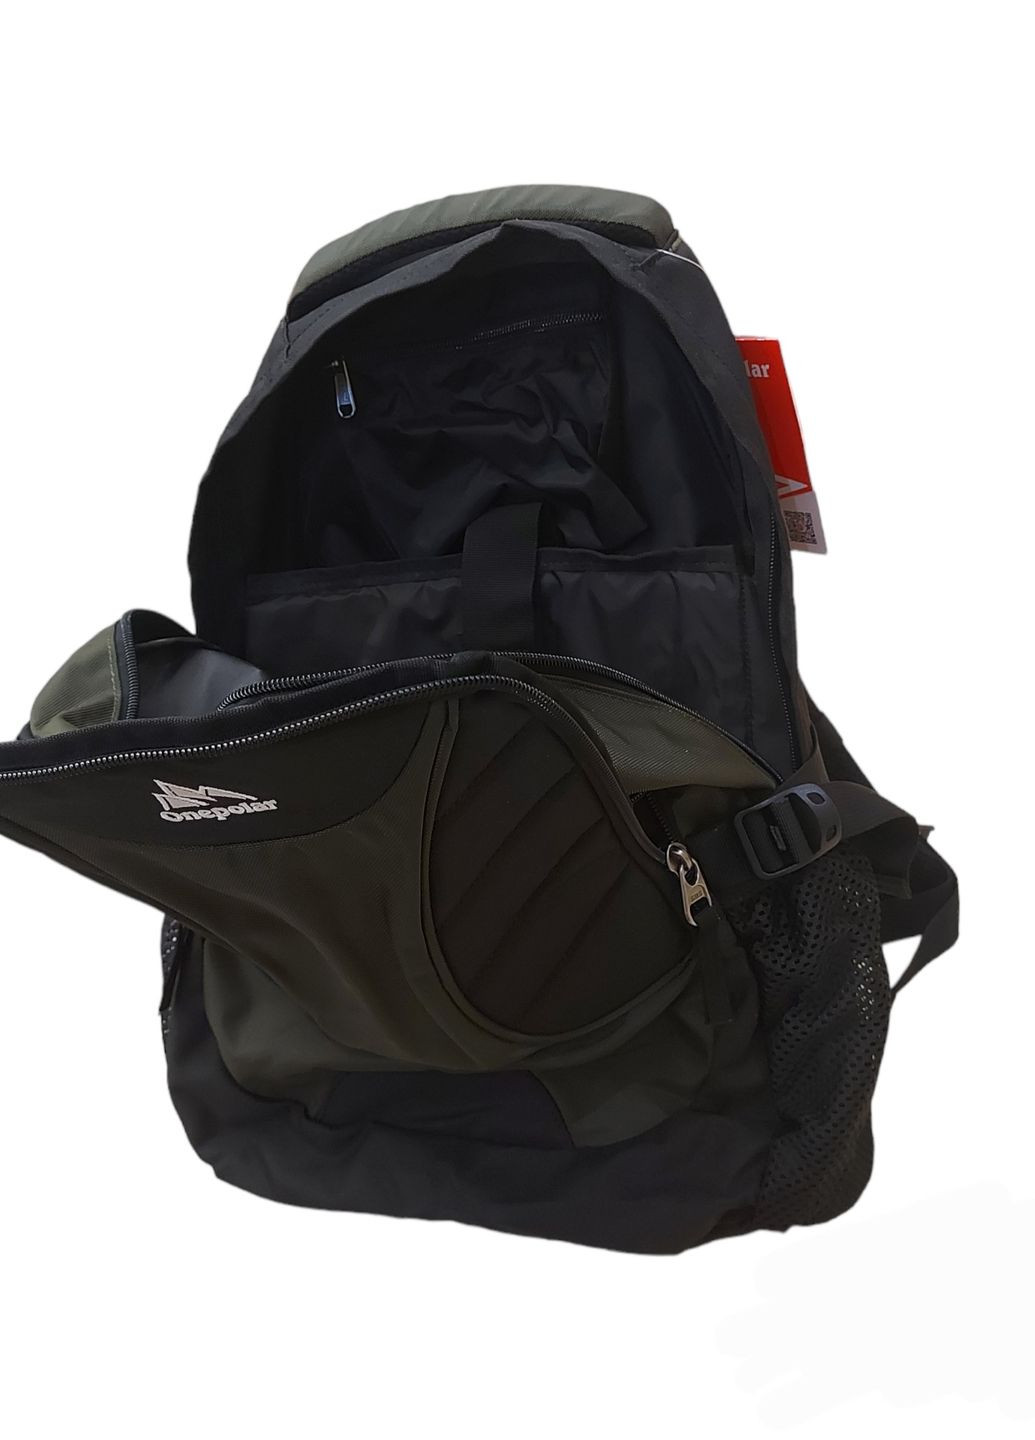 Фірмовий міський рюкзак M Khaki для ноутбука Onepolar 1307 (263684360)